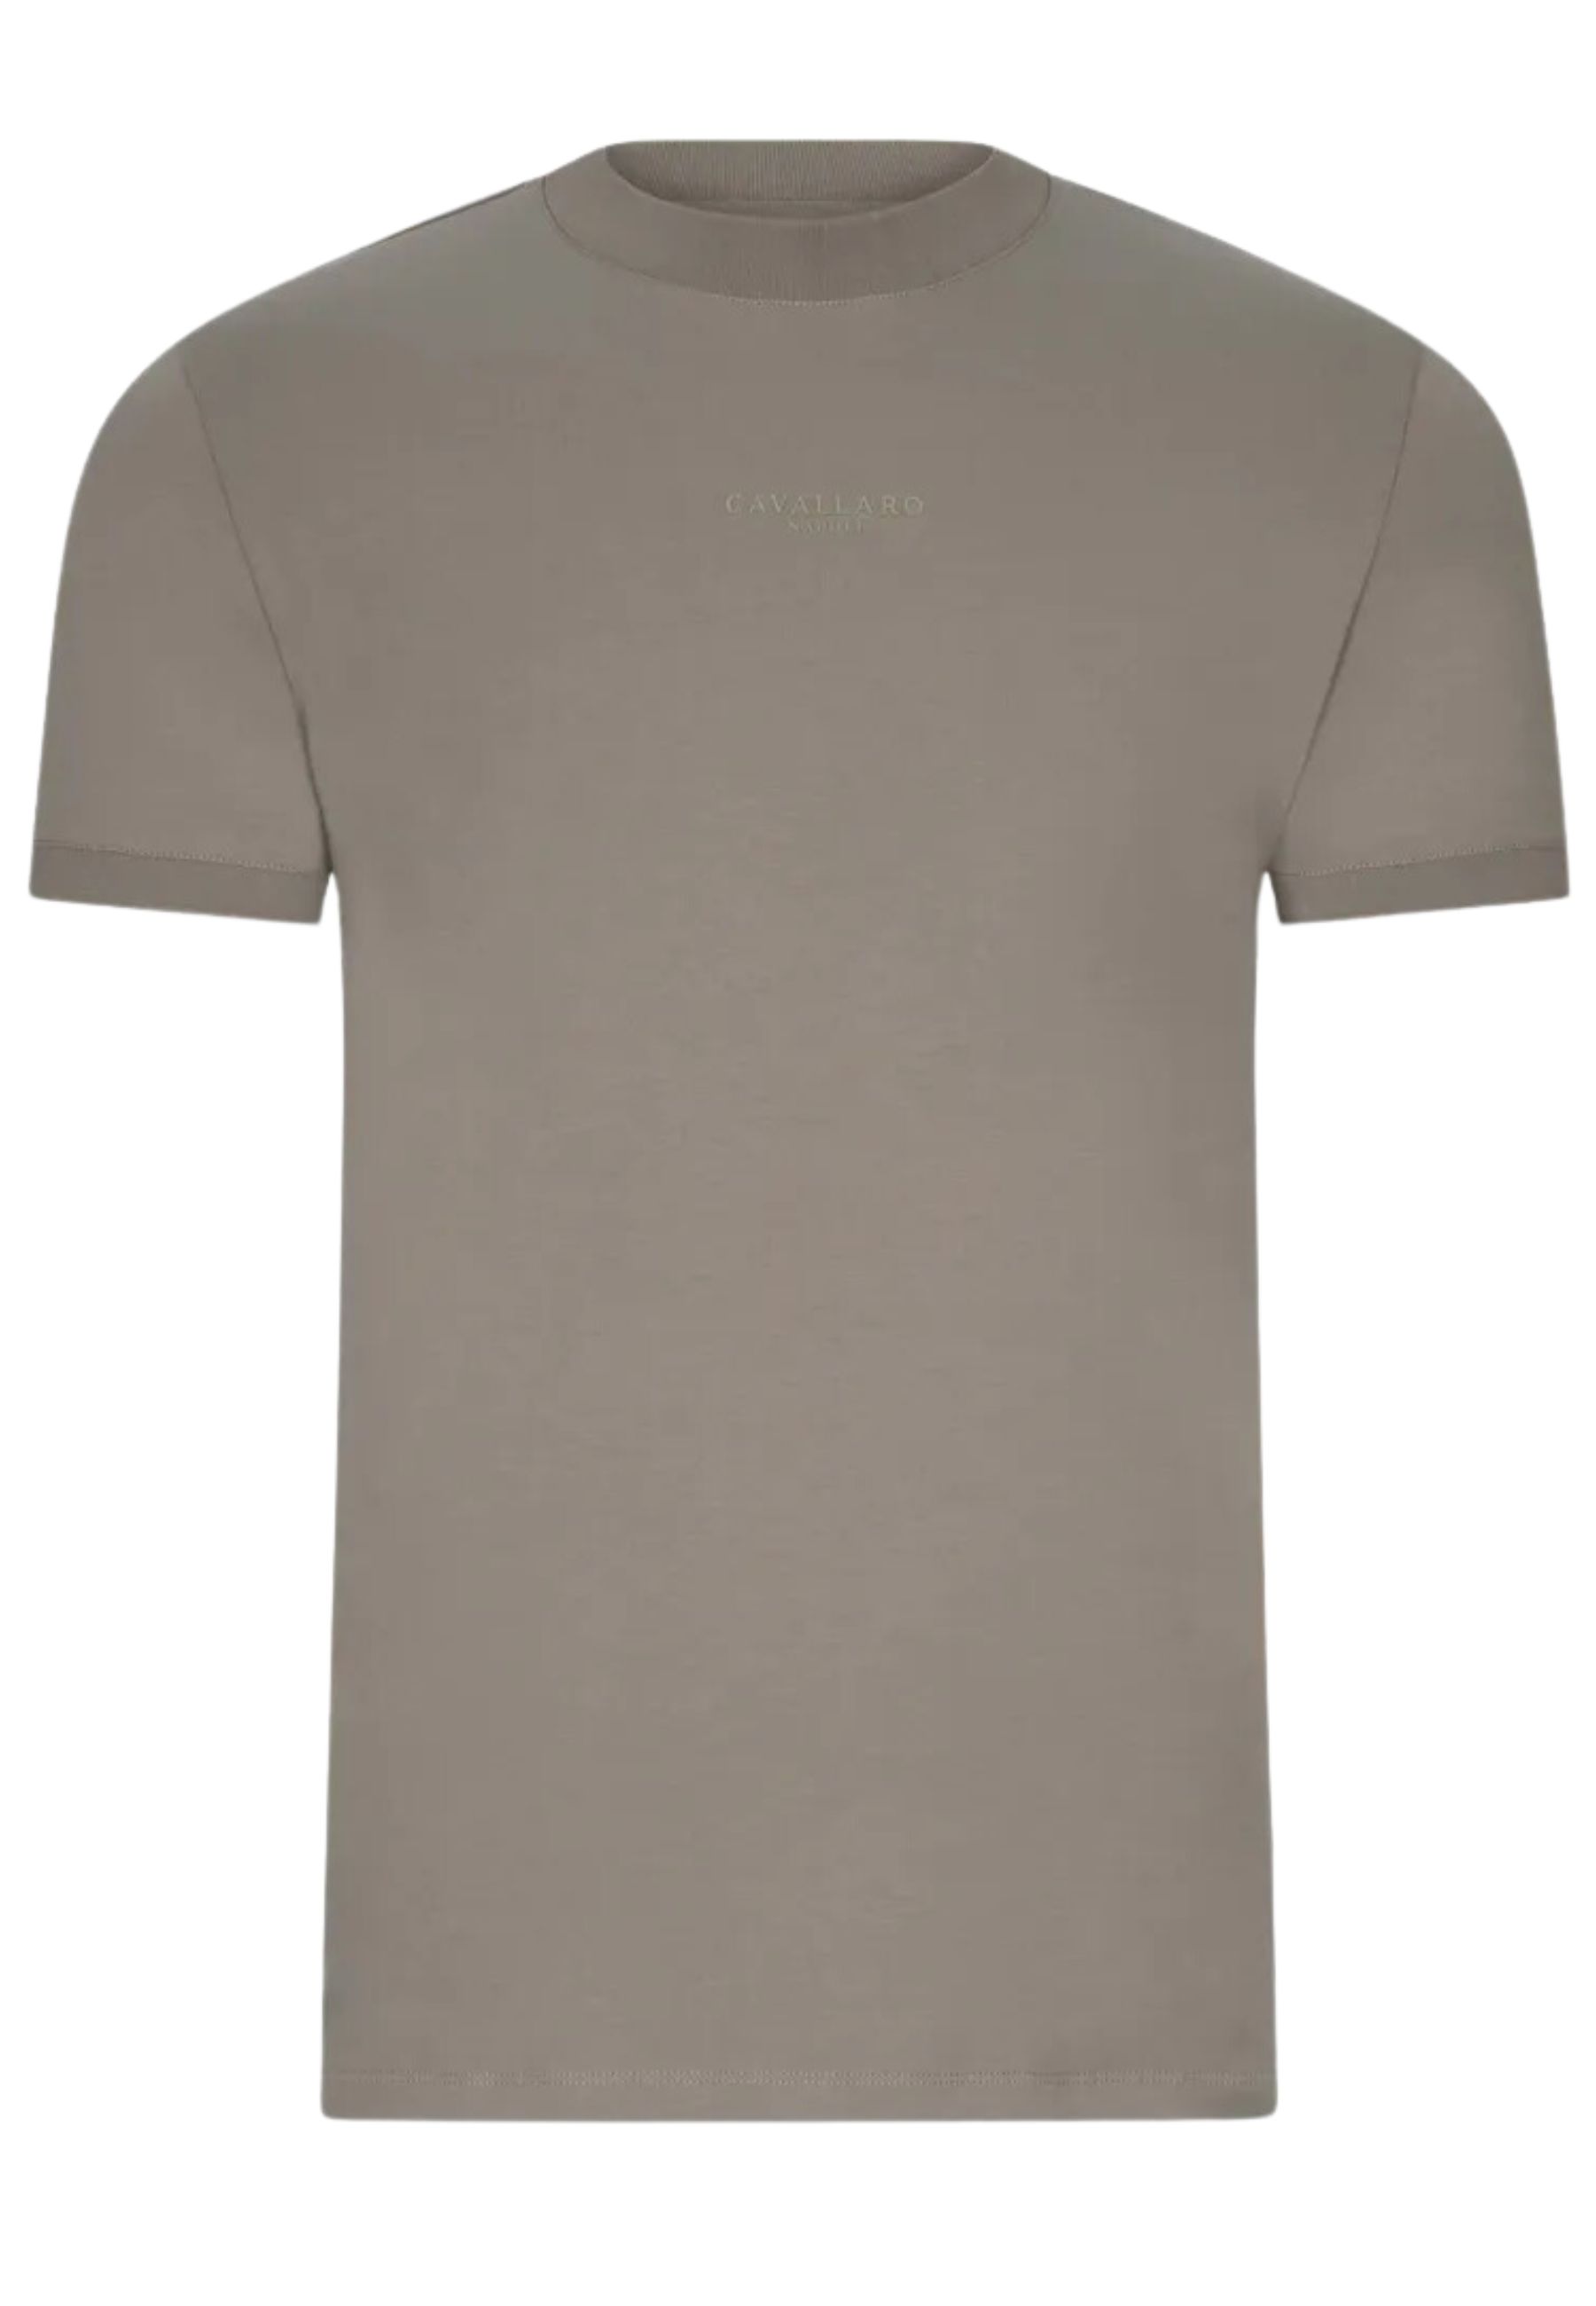 Shirt Lichtgroen Darenio t-shirts lichtgroen